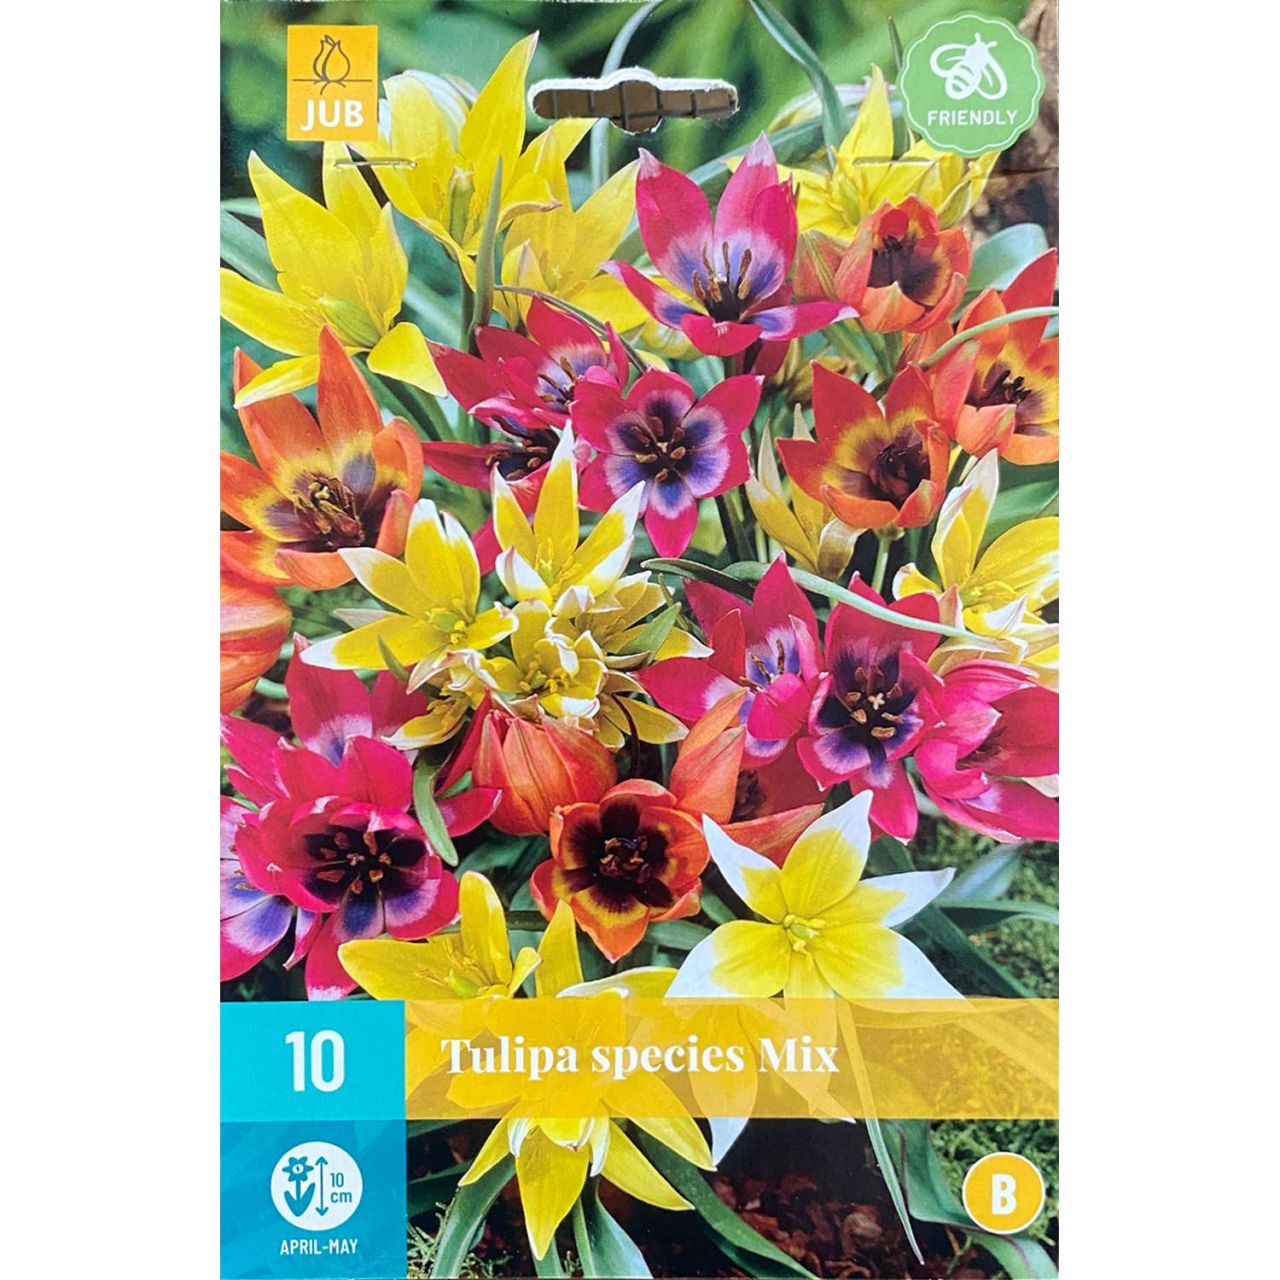 Kategorie <b>Herbst-Blumenzwiebeln </b> - Wildtulpen 'Mischung' - 10 Stück - Tulipa